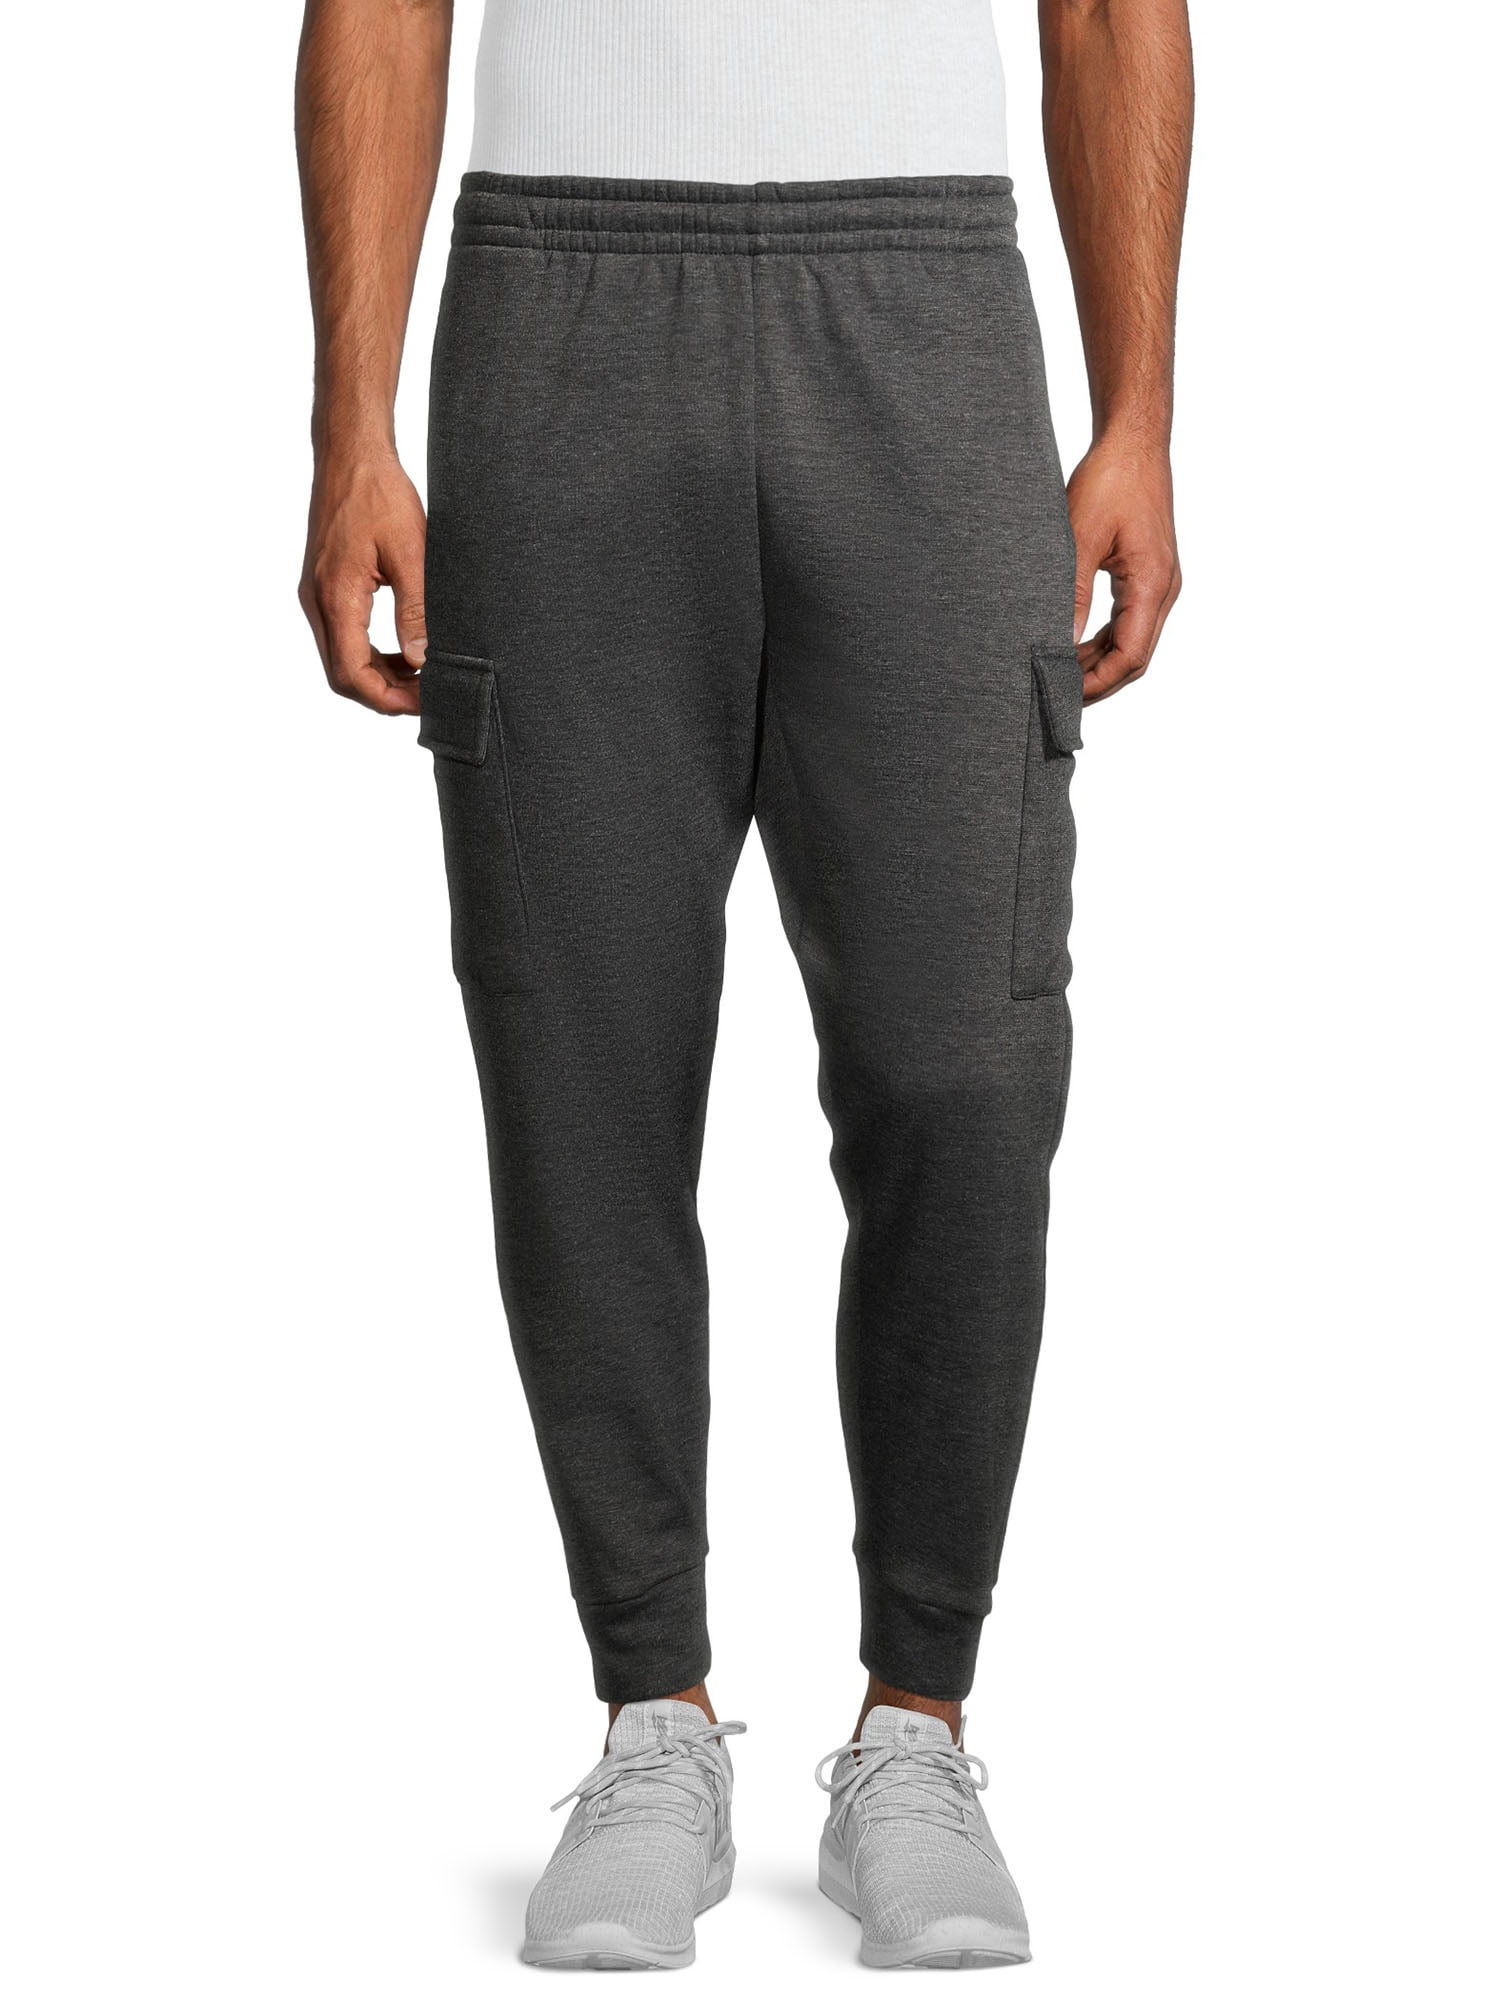 Unipro Men's Solid Cargo Fleece Sweatpants - Walmart.com